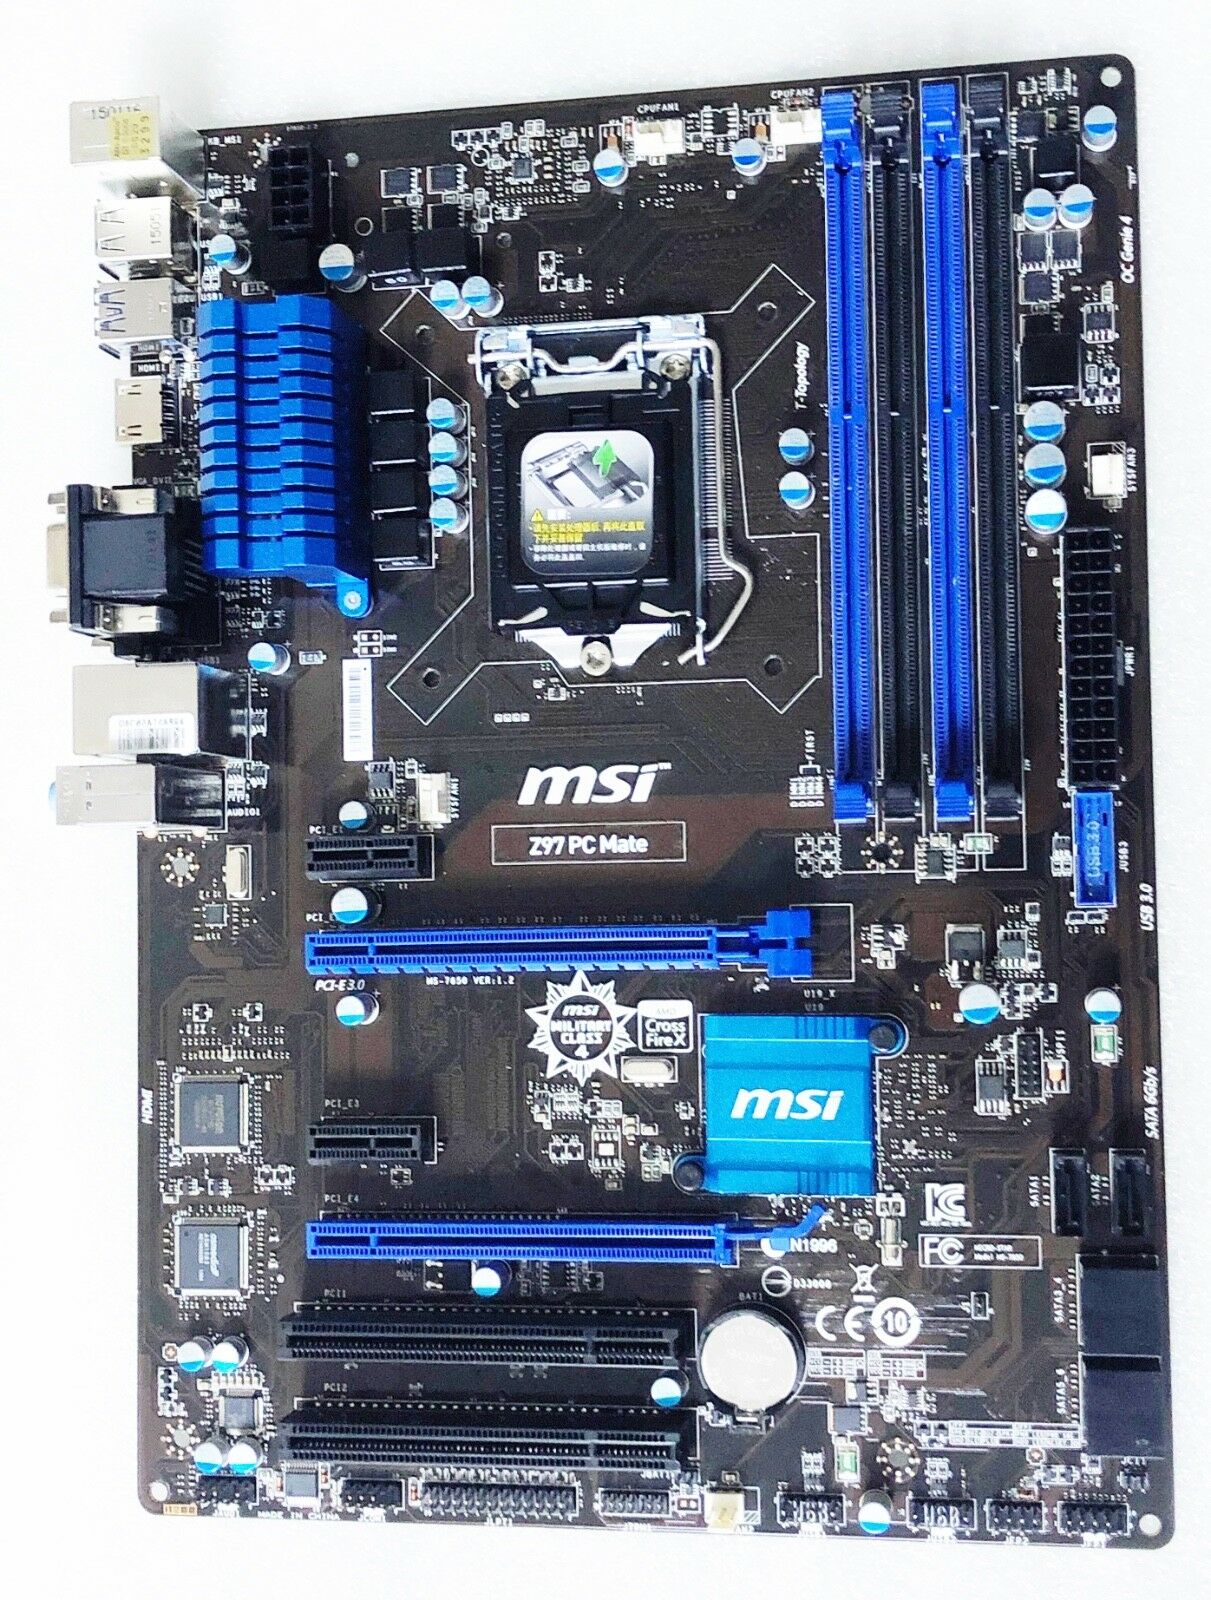 Msi Z97 Pc Mate Lga 1150 Intel Z97 Sata 6gb/s Hdmi Usb 3.0 Atx Intel Motherboard